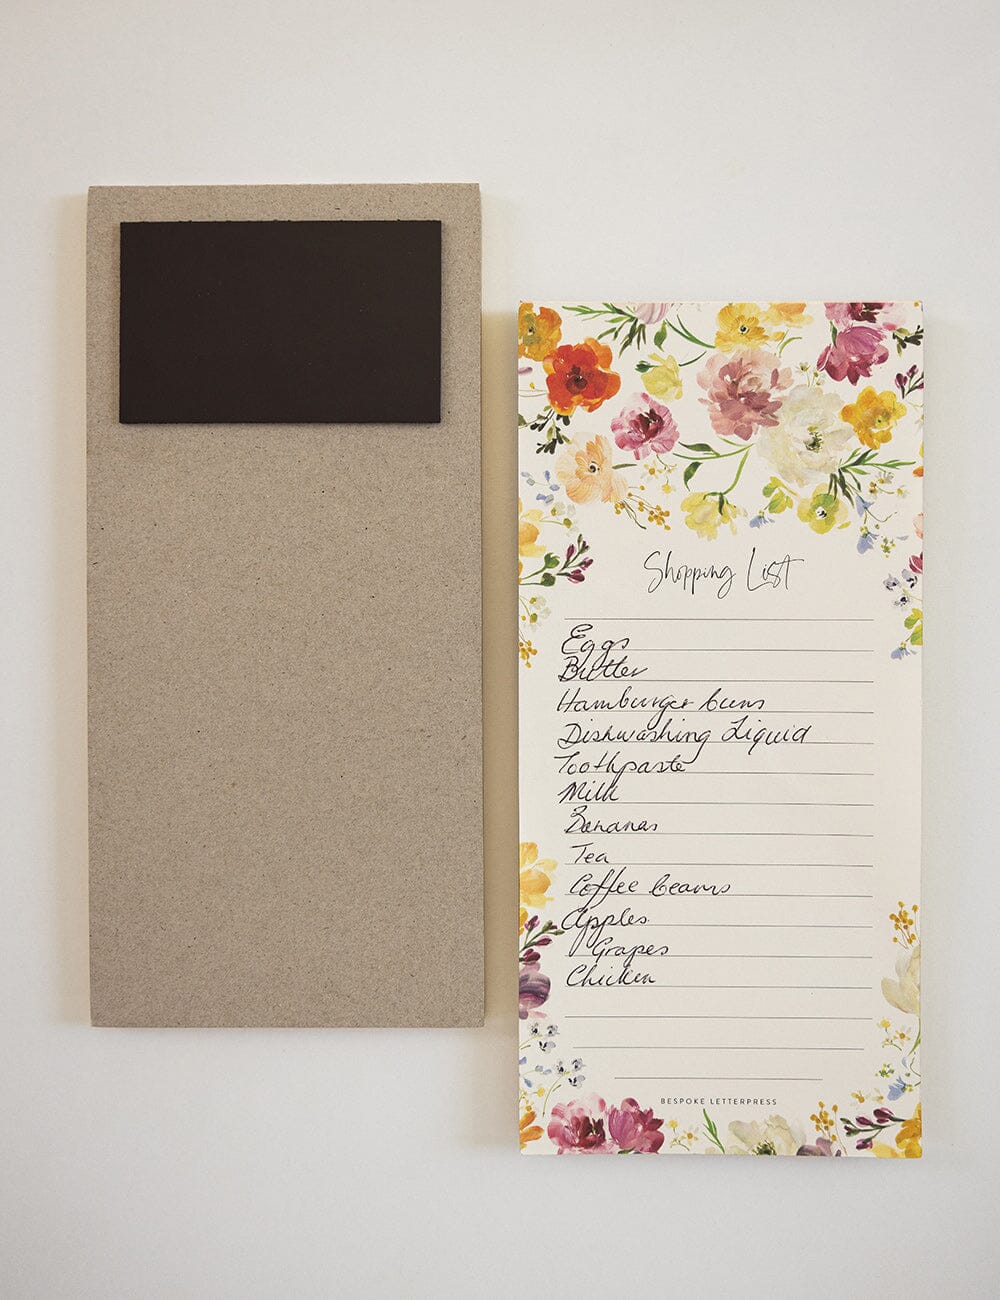 Bespoke Letterpress - Gold Foil Shopping List - The Flower Crate